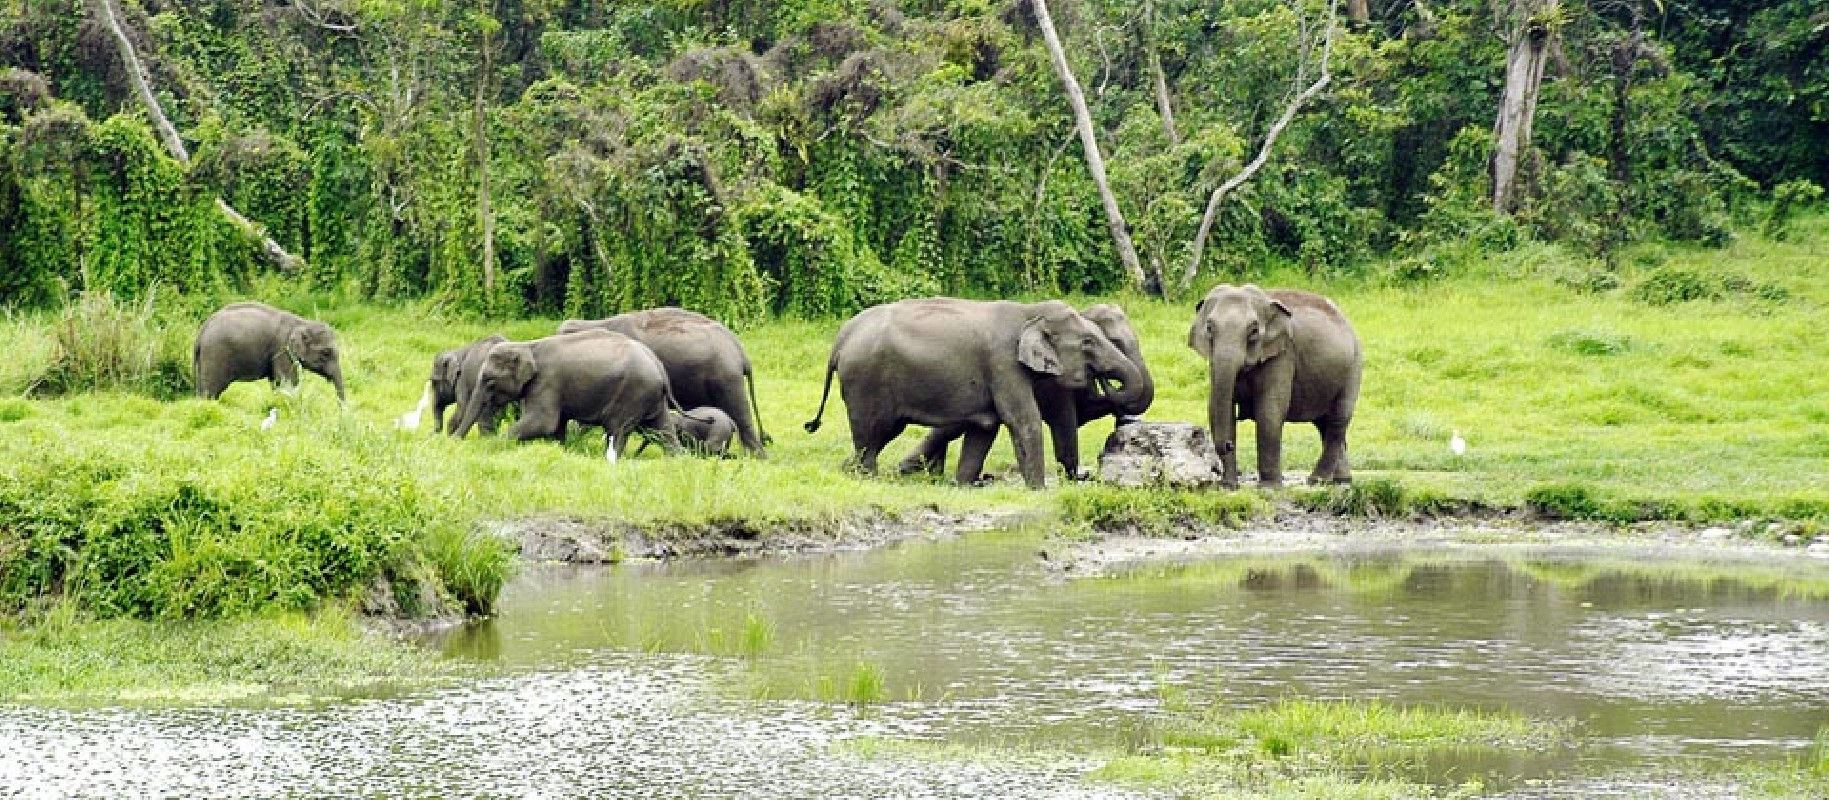 Gorumara-national-Park-West Bengal